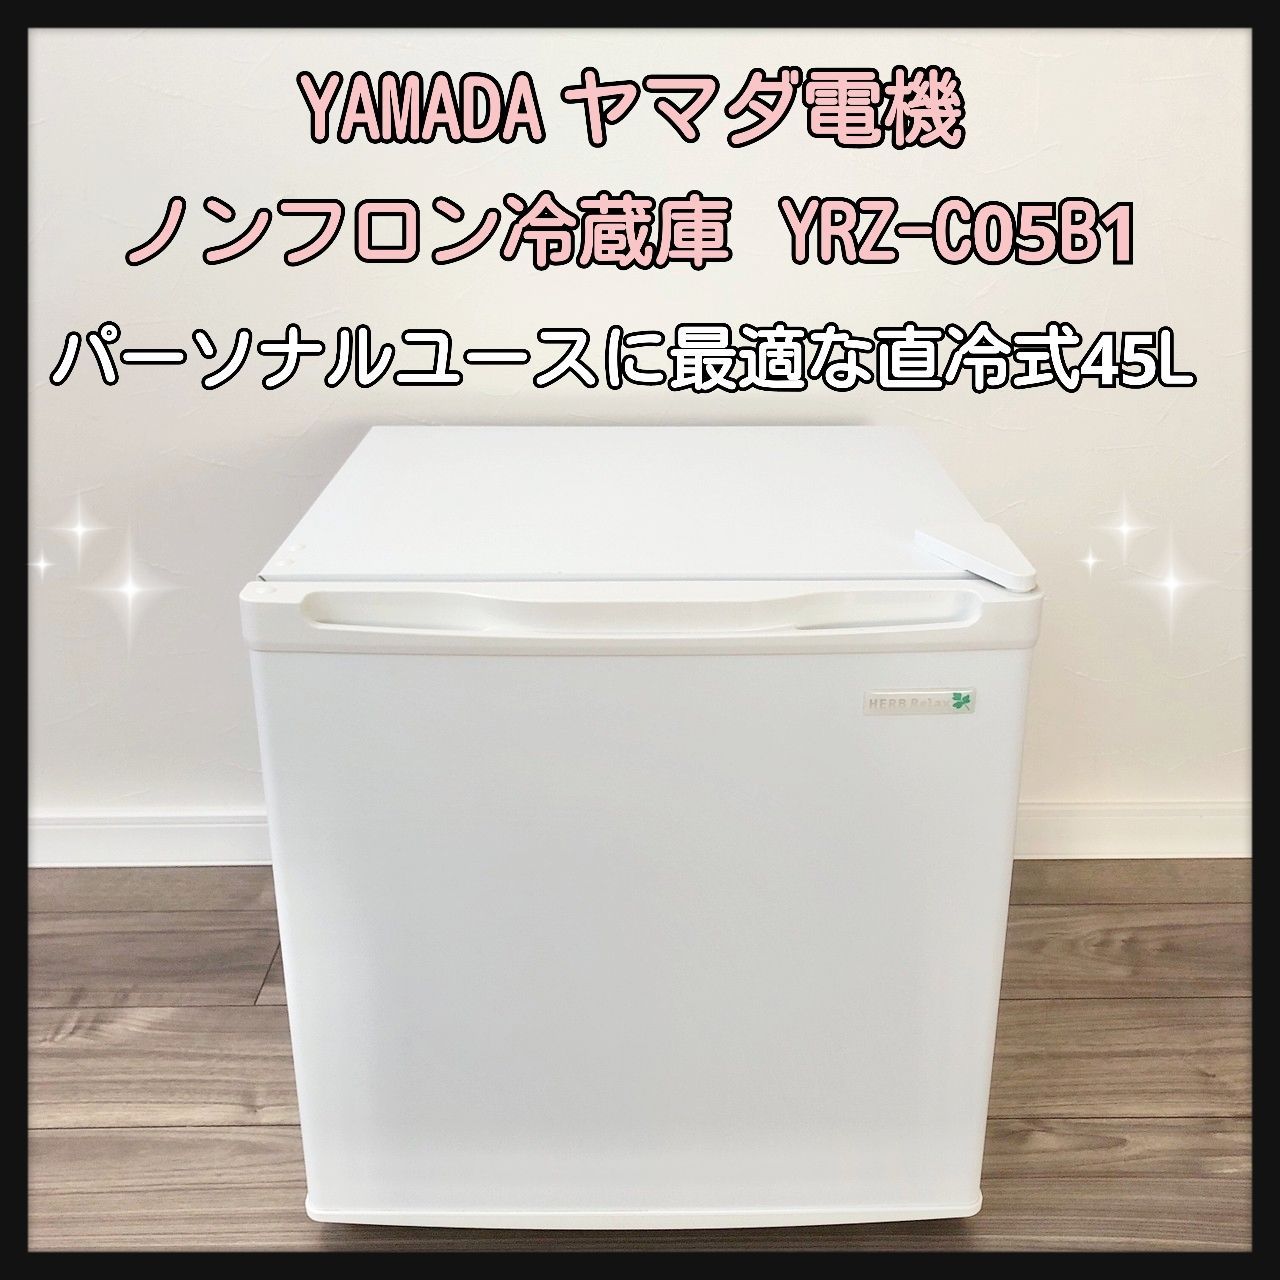 1ドア冷蔵庫 45L 2018年製 ハーブリラックスホワイト ヤマダ電機 YRZ 